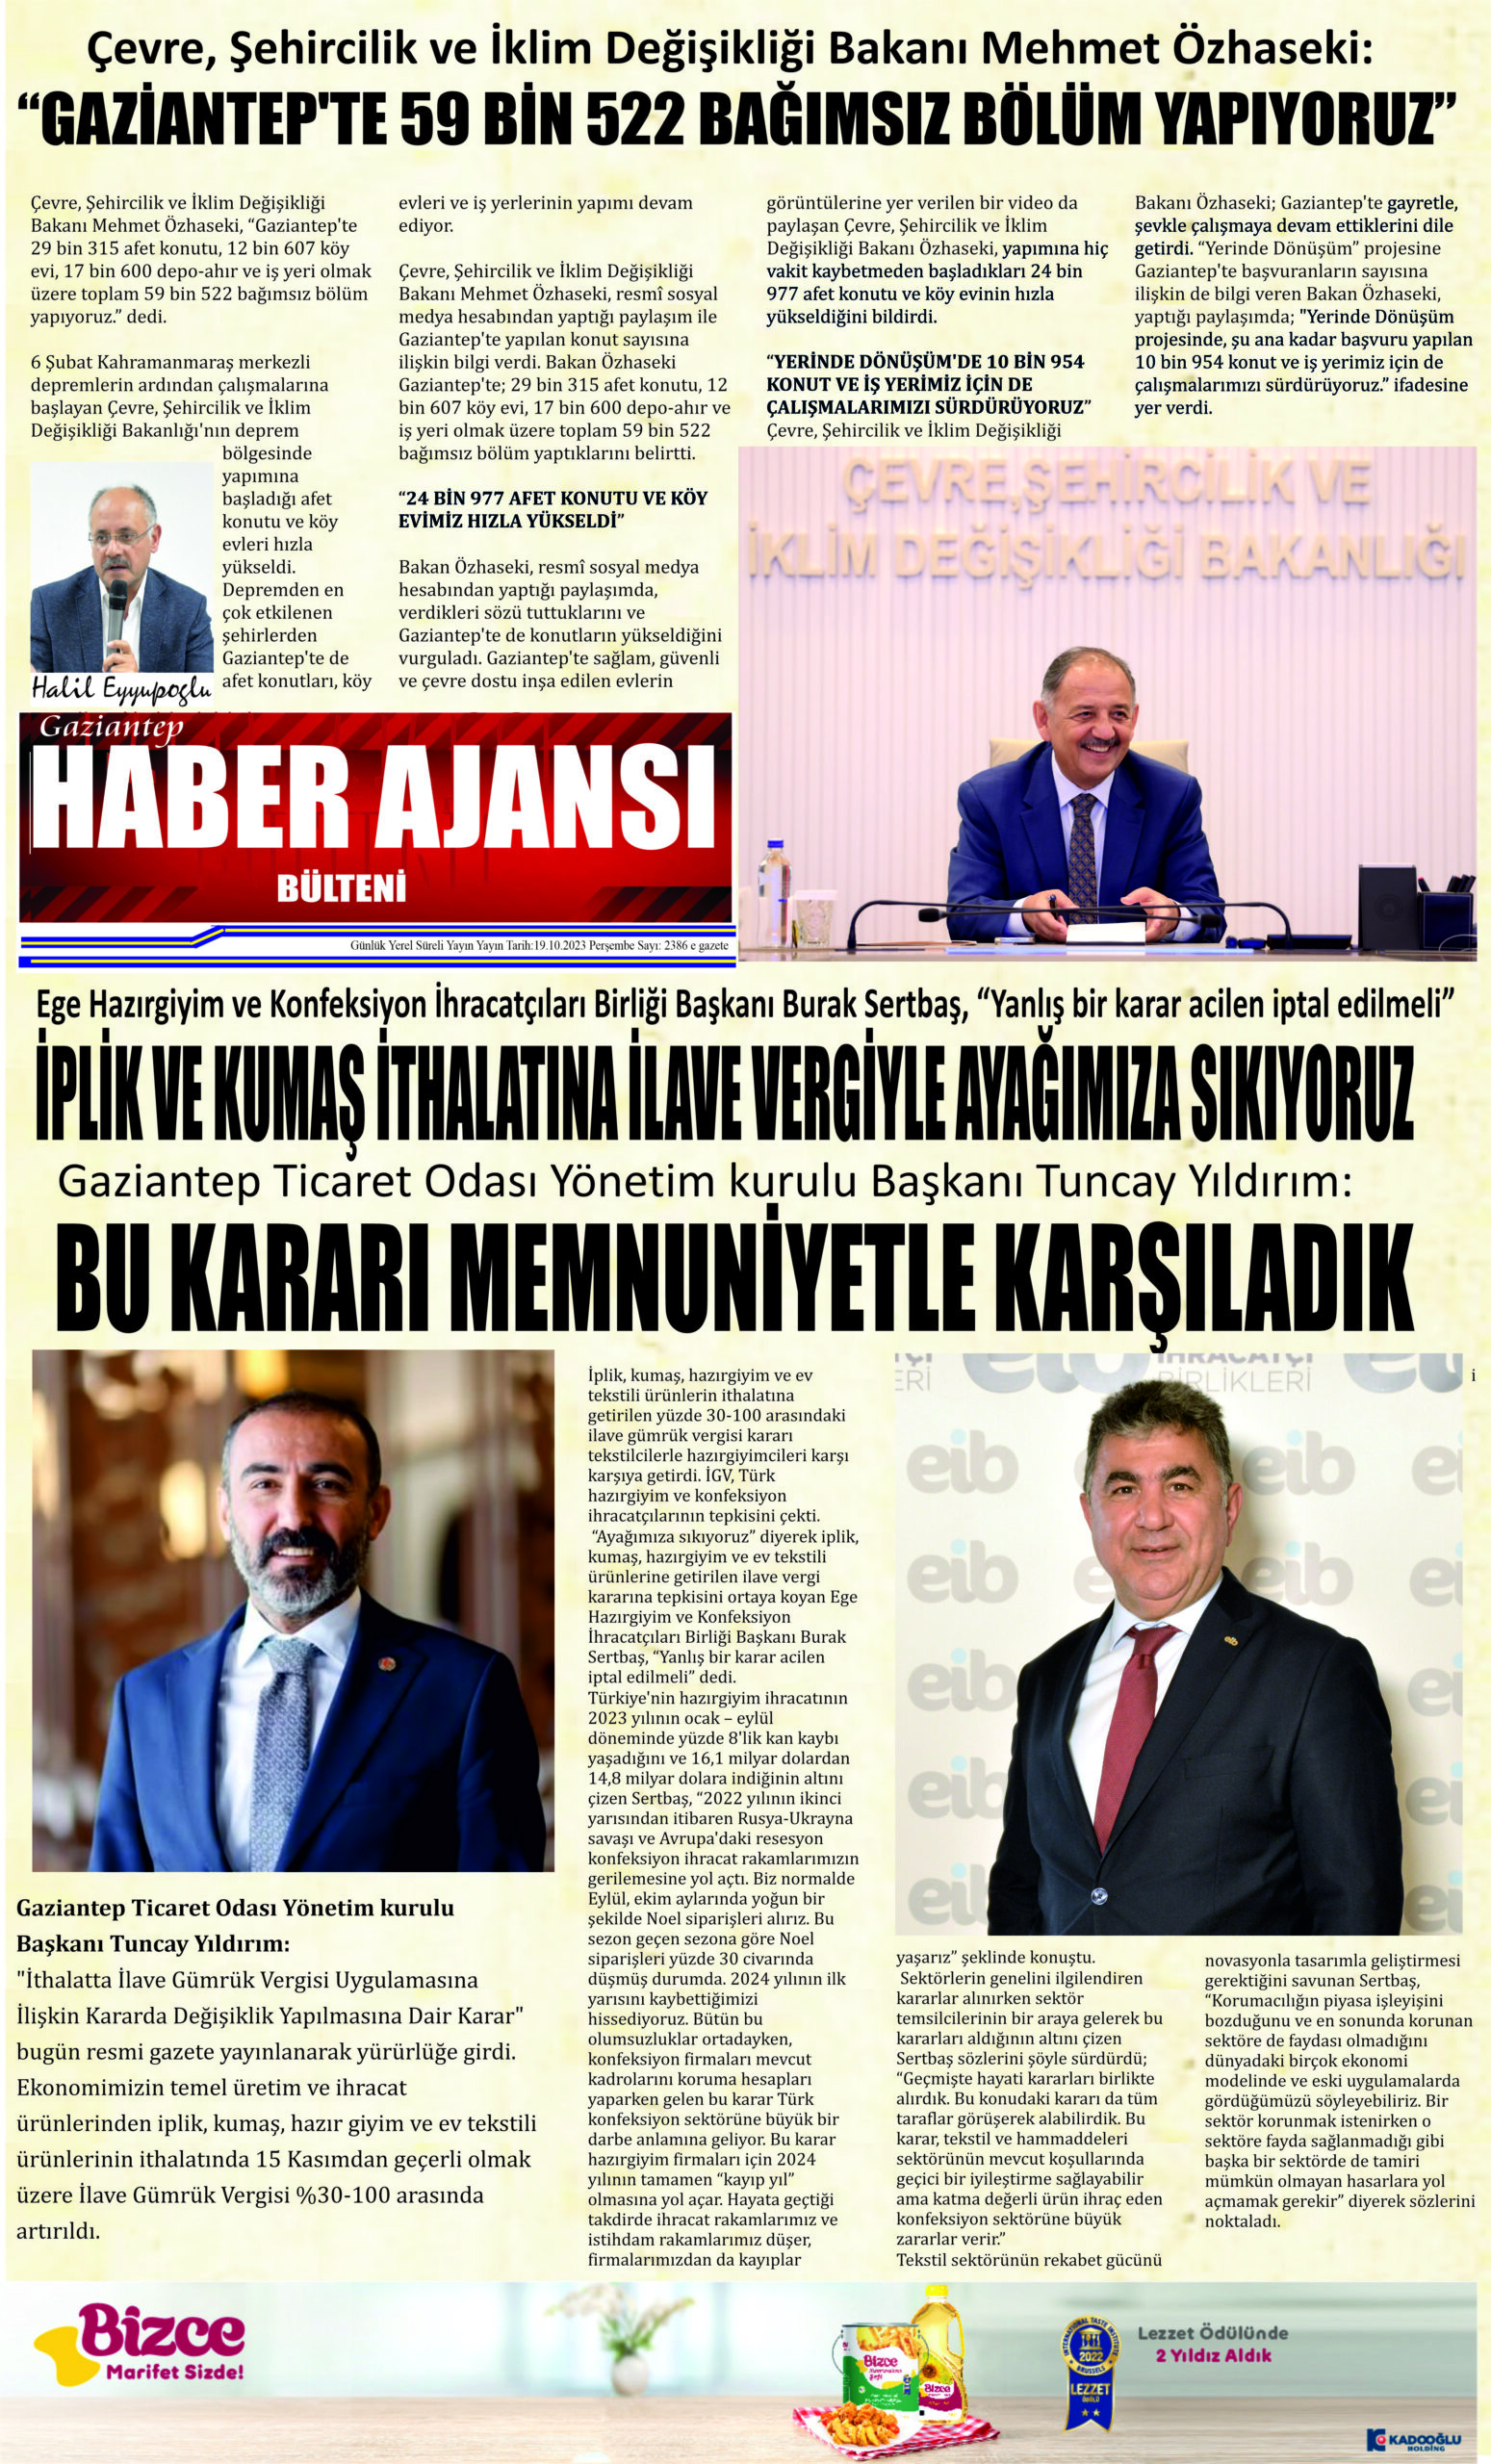 Gaziantep Haber Ajansı Bülteni Perşembe 19.10.2023 e gazete